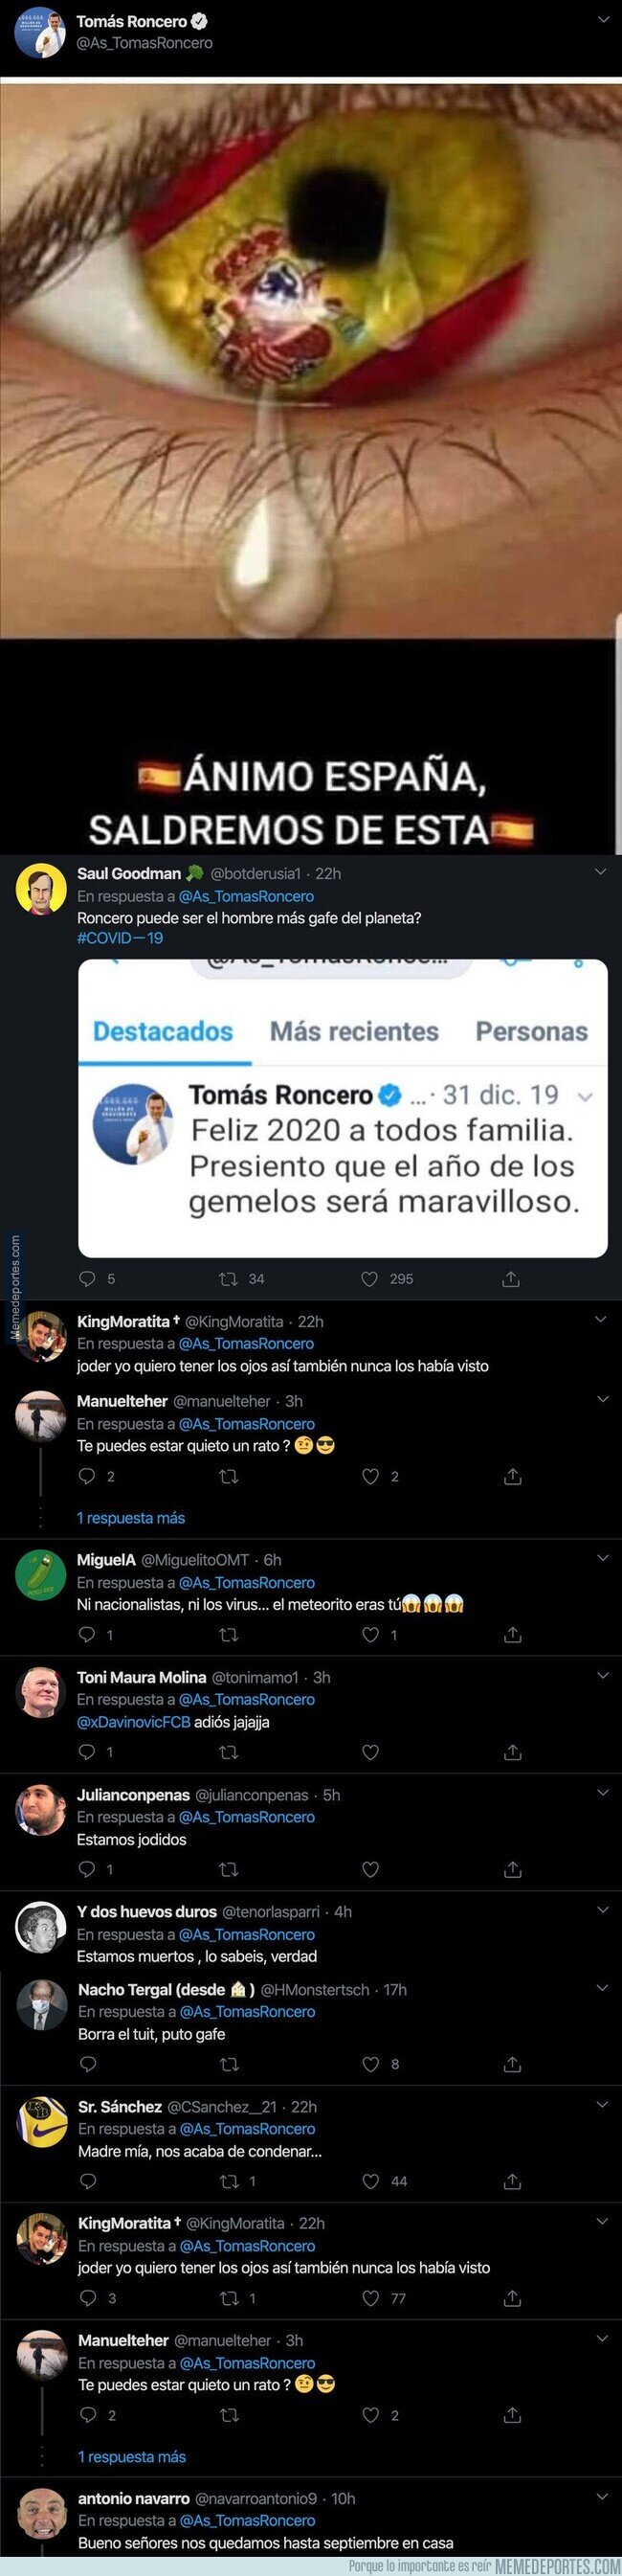 1101493 - Tomás Roncero la lía pardisima tuiteando esto sobre España y el coronavirus y todo el mundo le está respondiendo lo mismo